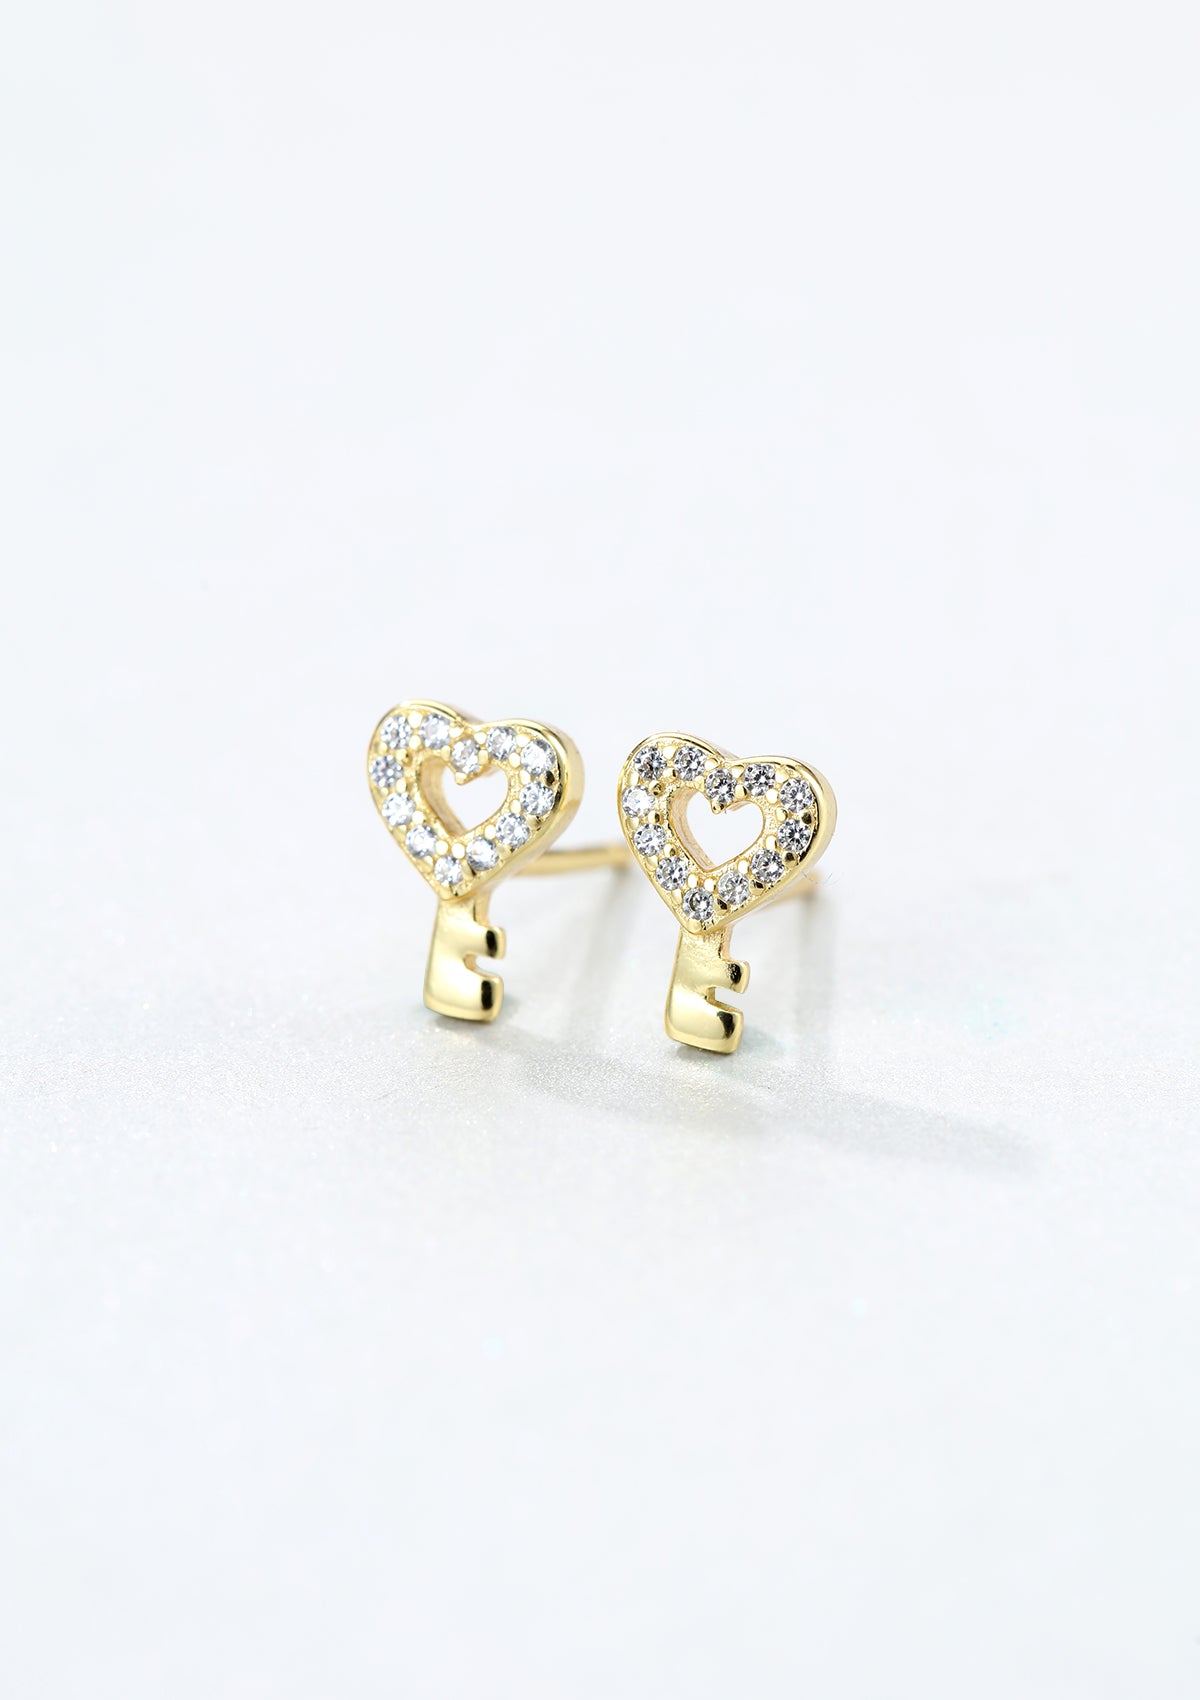 Heart Key Stud Earrings Sterling Silver Gold